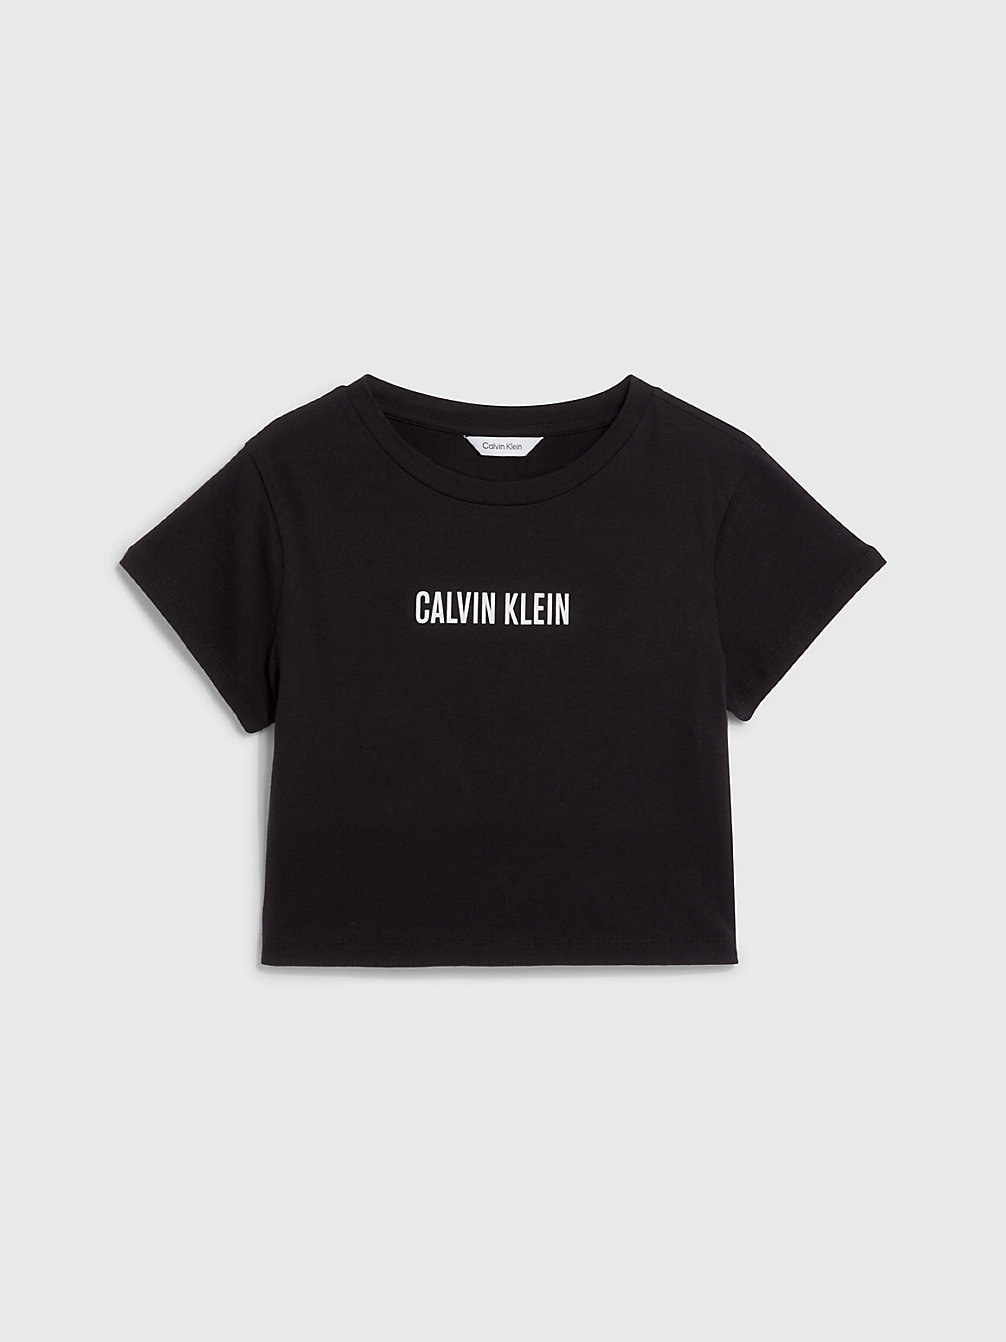 PVH BLACK > Dziewczęcy T-Shirt Plażowy O Krótkim Fasonie - Intense Power > undefined Dziewczynki - Calvin Klein